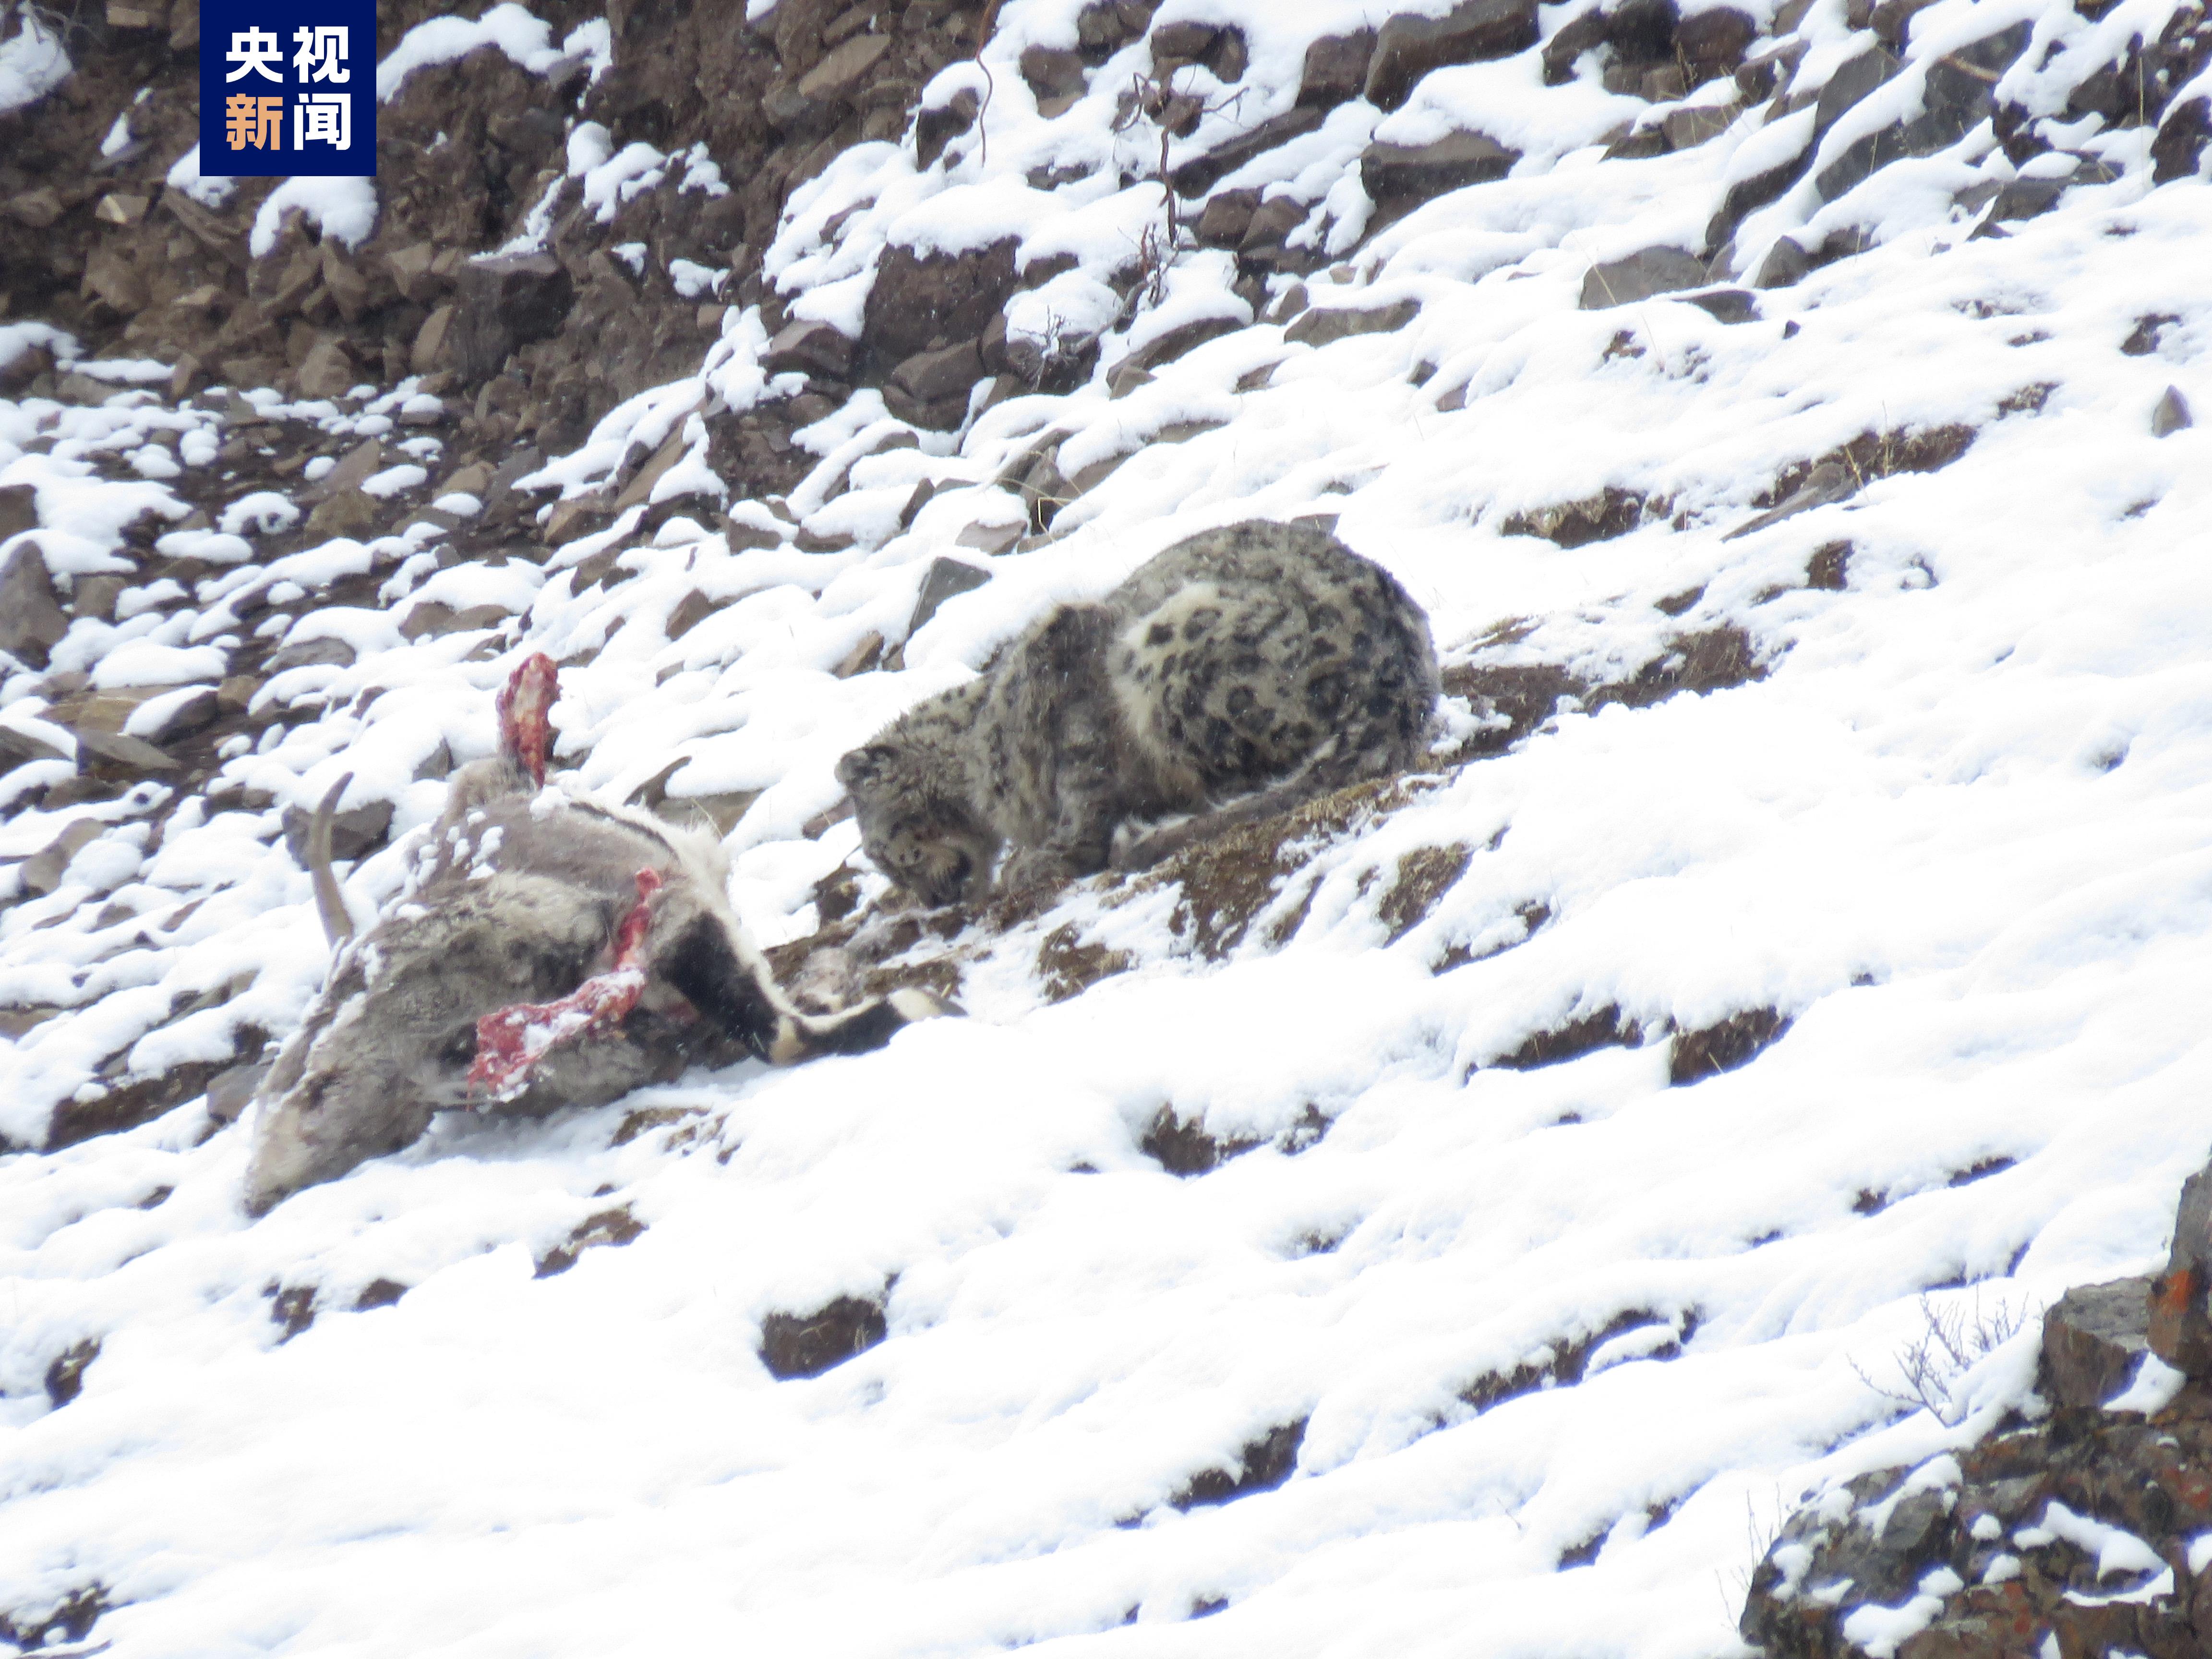 “雪山之王”珍贵影像 四川石渠首次拍到雪豹进食画面